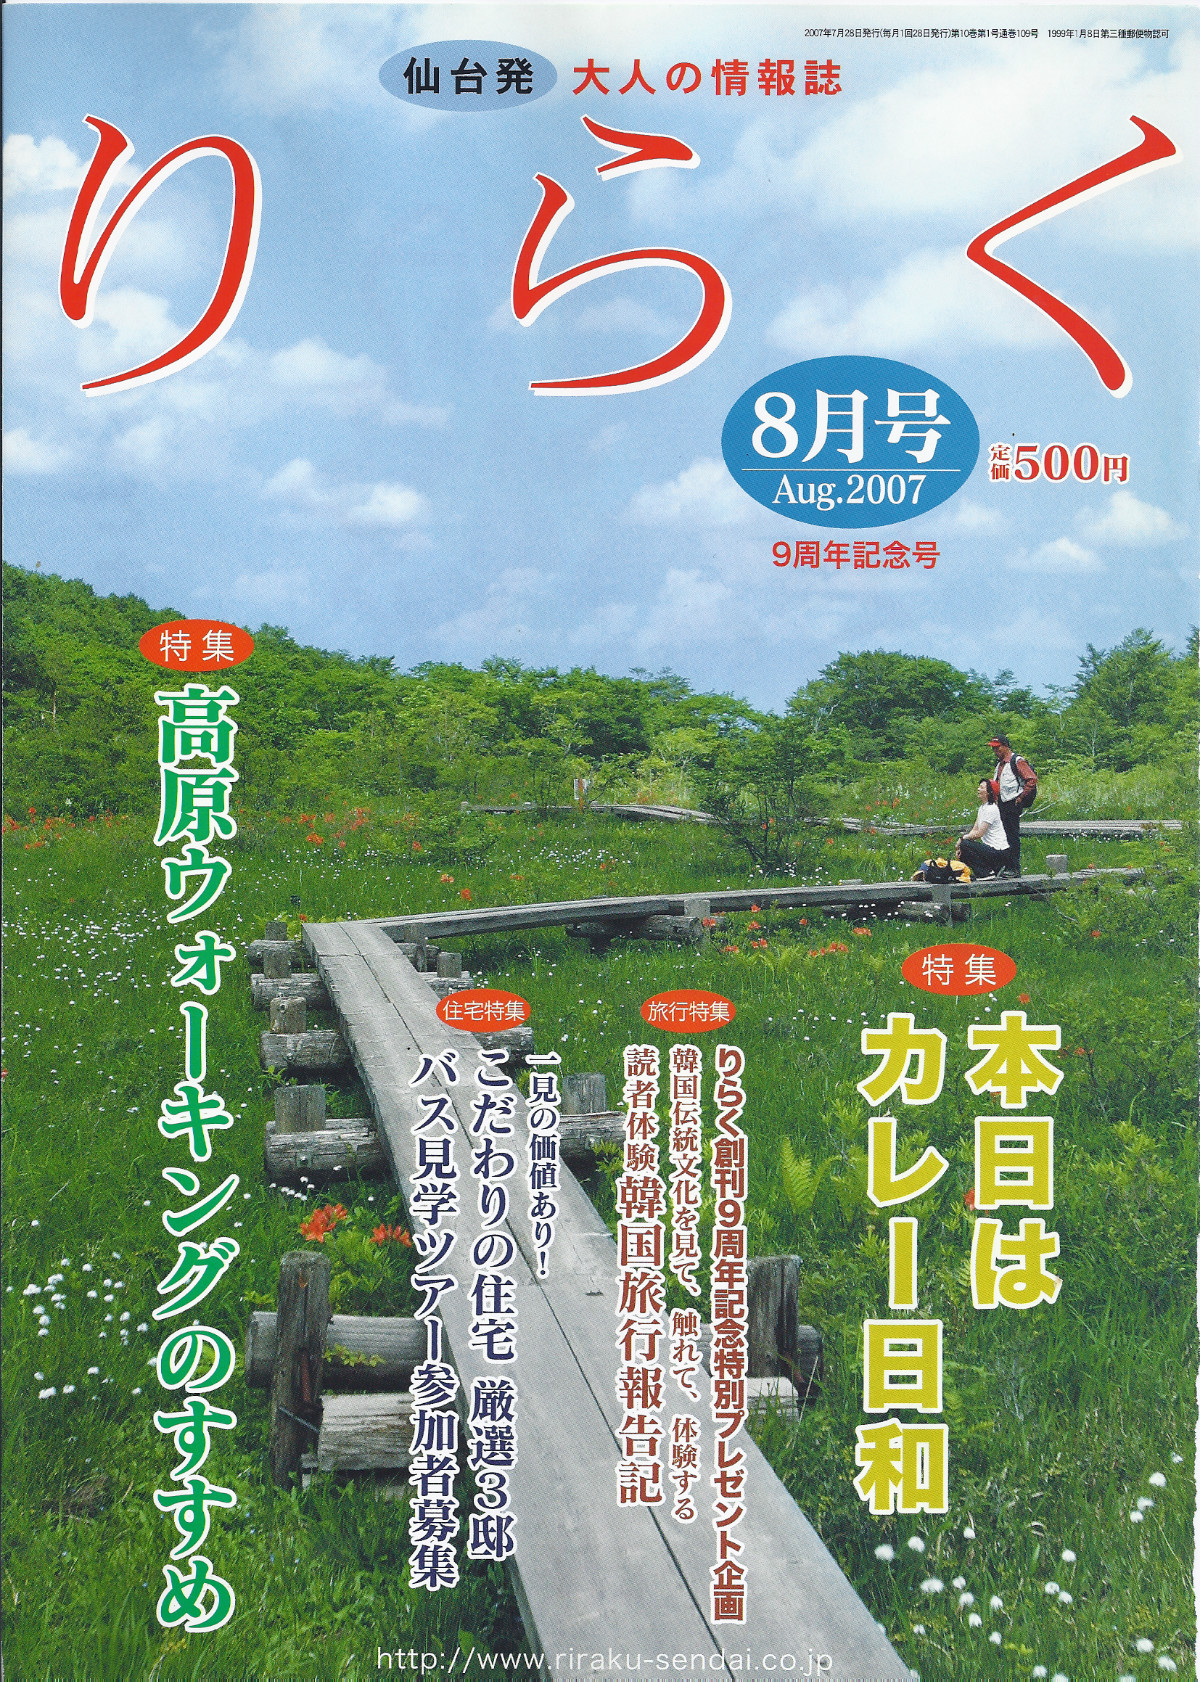 07-1 일본 지화자 소개(riraku 2007_8) 표지.jpg